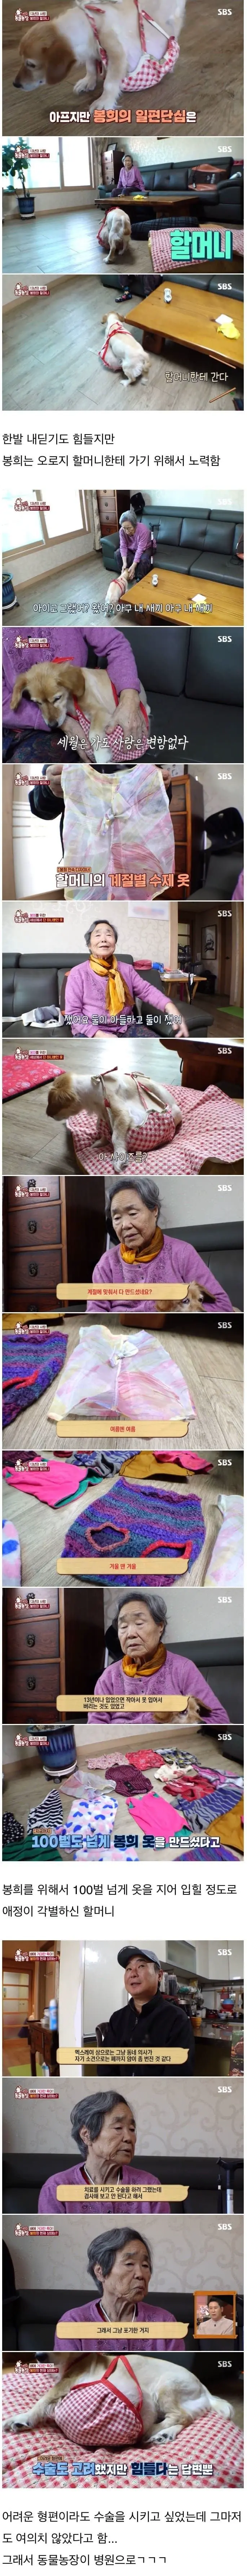 80대 할머니를 울게 만든 동물농장 제작진들.jpg.gif | mbong.kr 엠봉